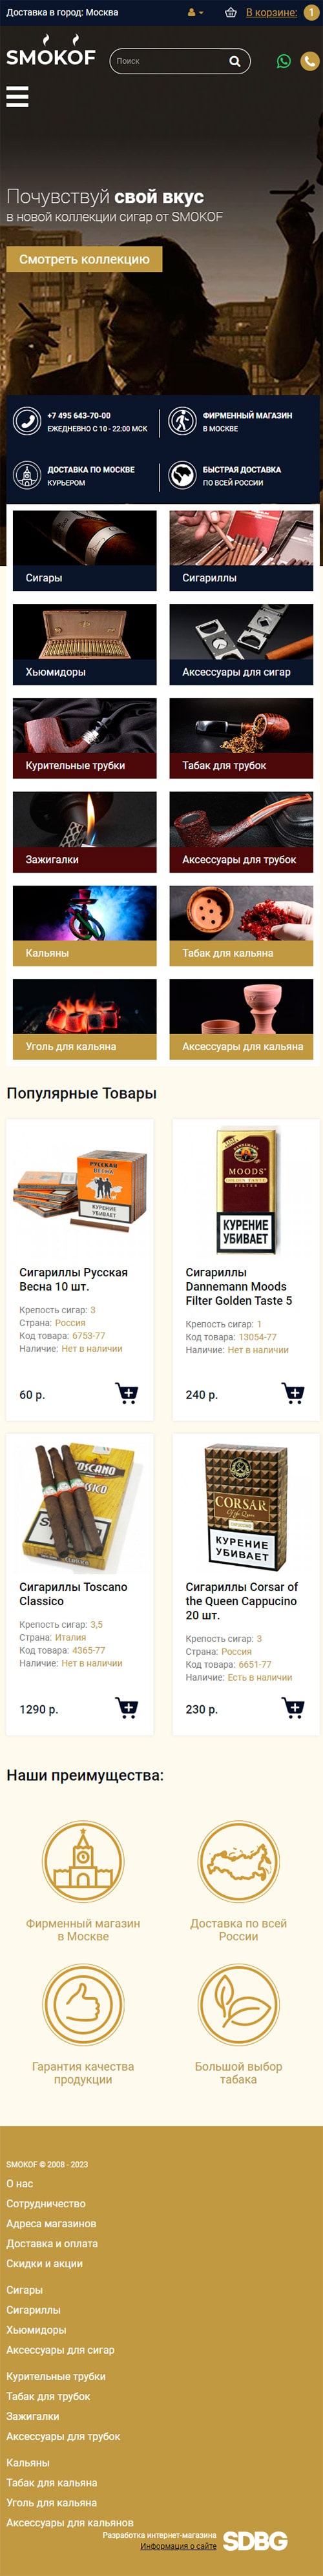 Разработка интернет-магазина табачной продукции «Smokof»